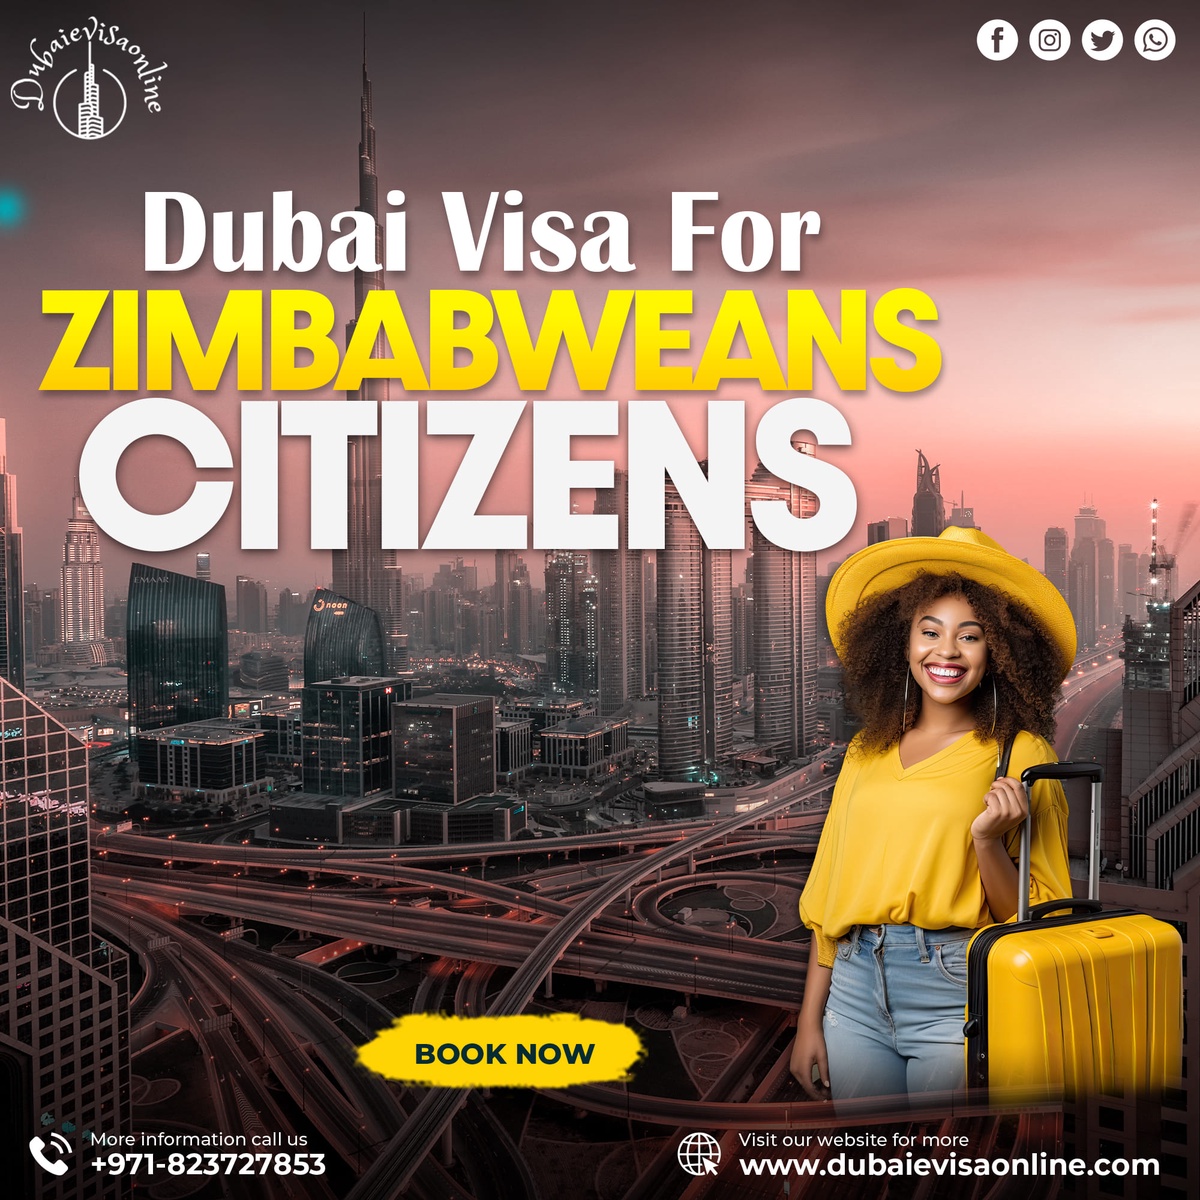 Dubai visa for Zimbabwean Citizens